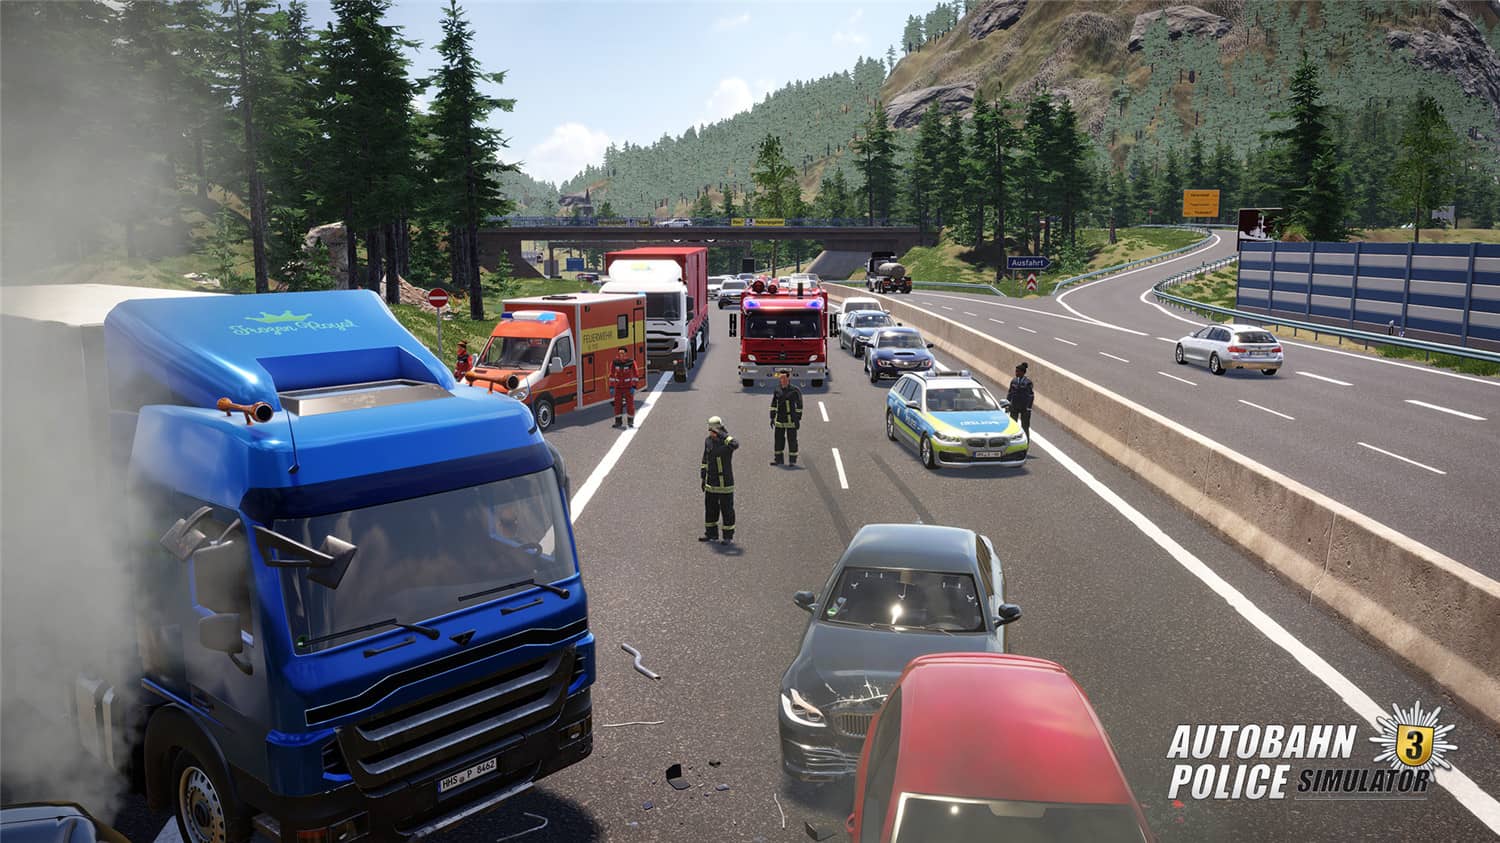 高速公路警察模拟3/Autobahn Police Simulator 3-3